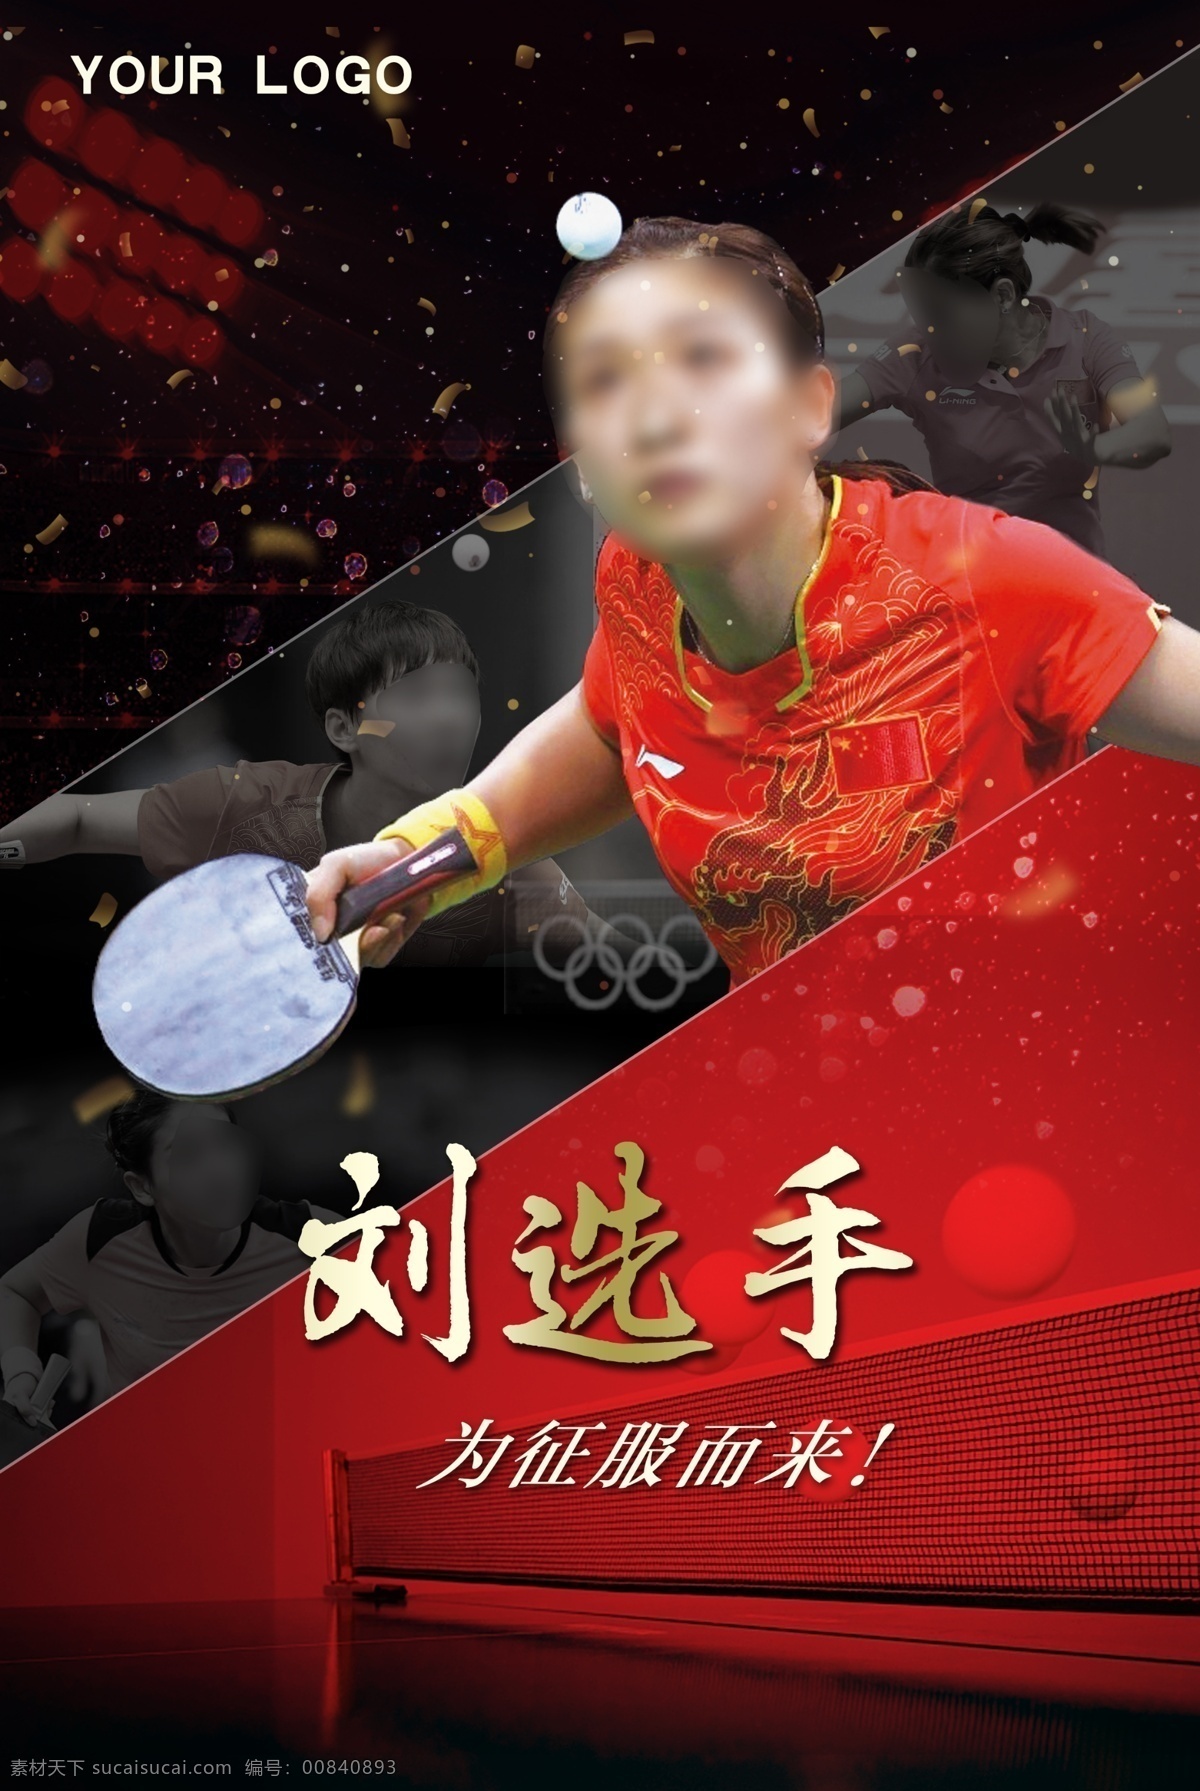 乒乓球运动 体育 展板 乒乓球 运动 活动室 运动室 刘诗雯 拼搏 竞赛 金牌 奥运 冠军 文化墙 企业氛围